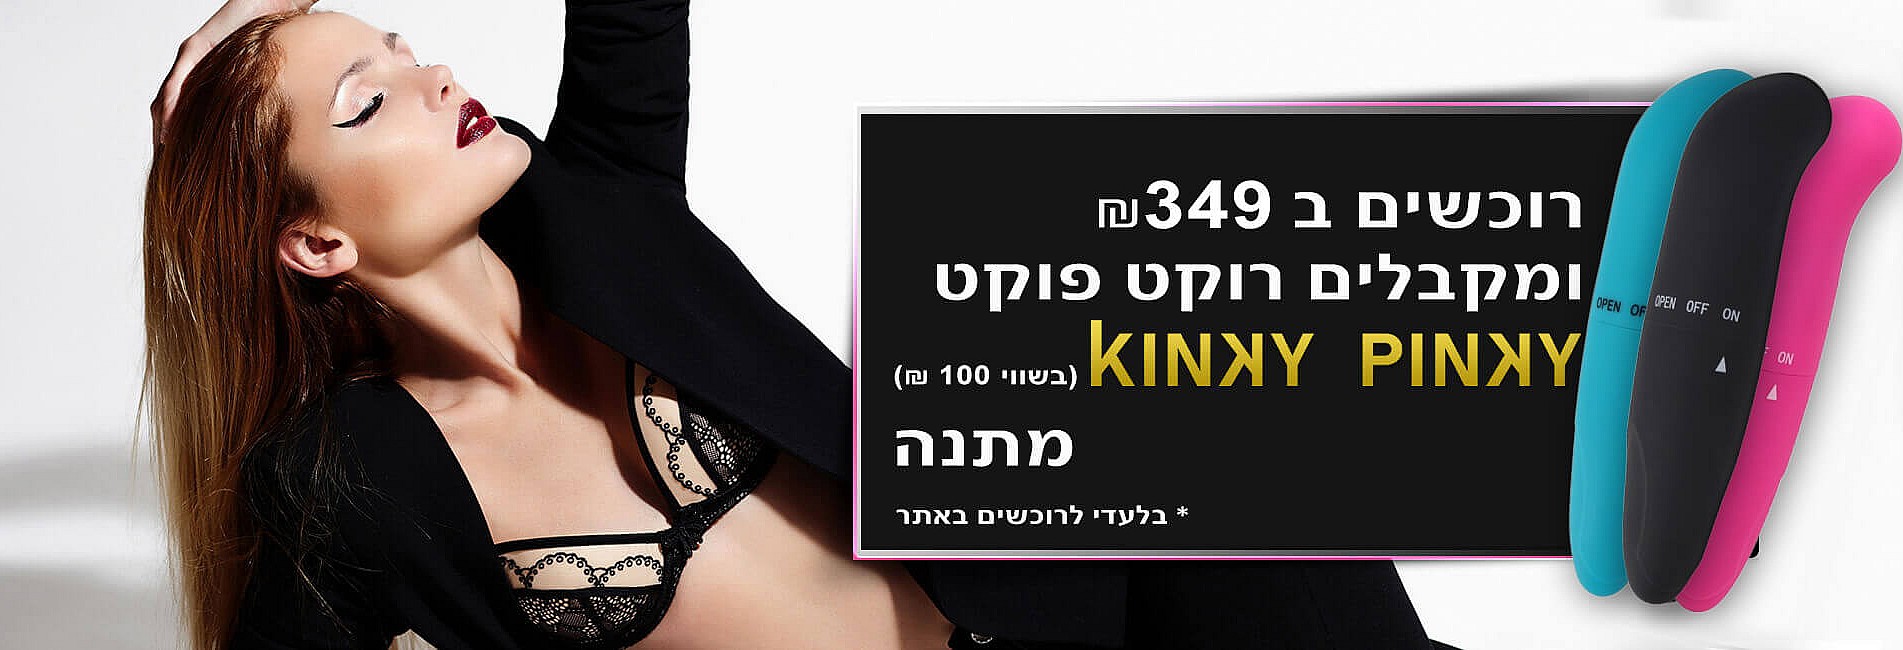 ויברטור רוקט פוקט מתנה - סקס סטייל, חנות סקס המובילה בישראל